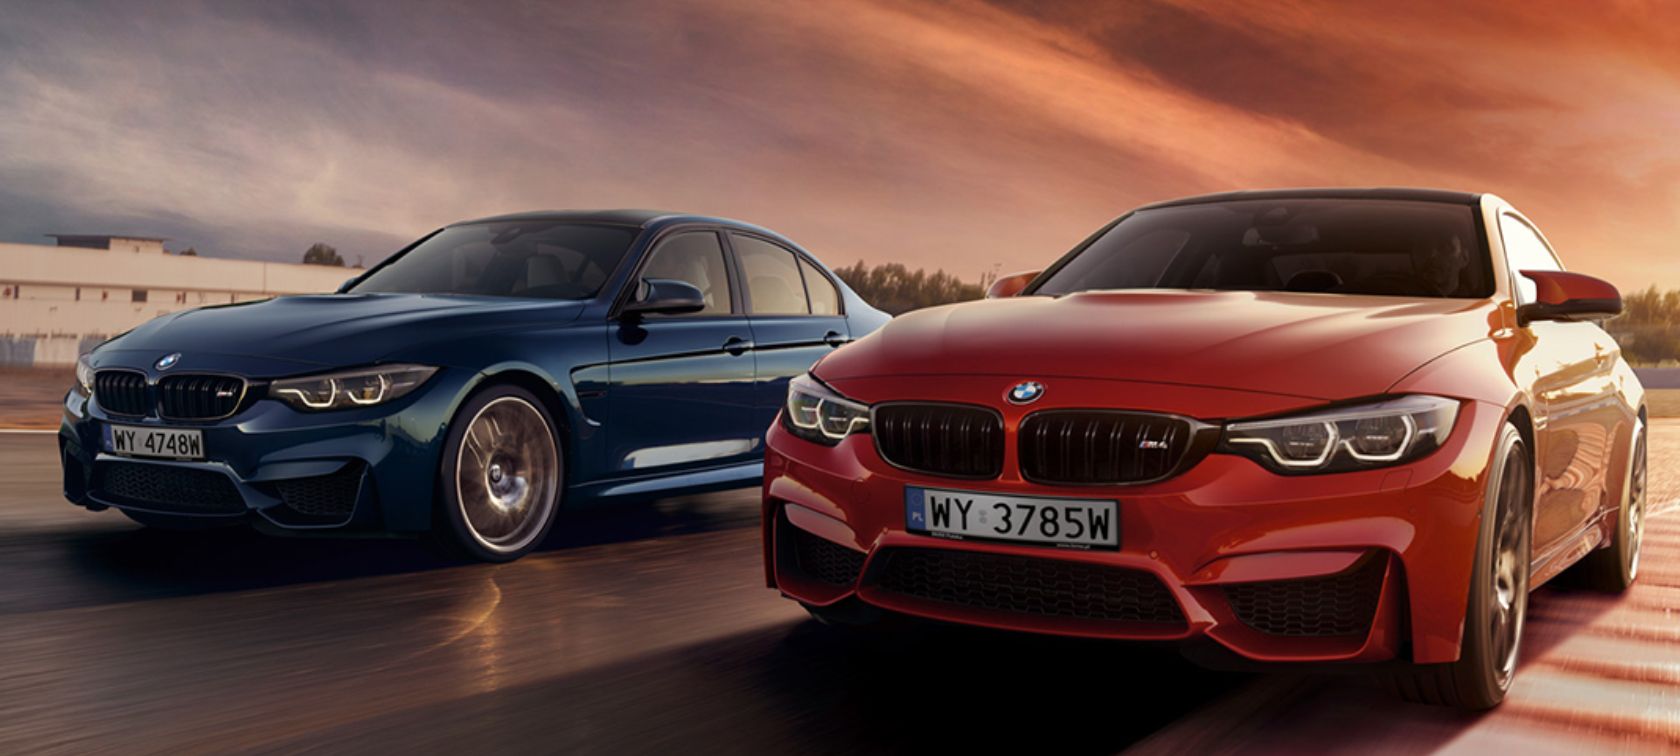 BMW MCars zwycięża w rankingu magazynu Auto Świat